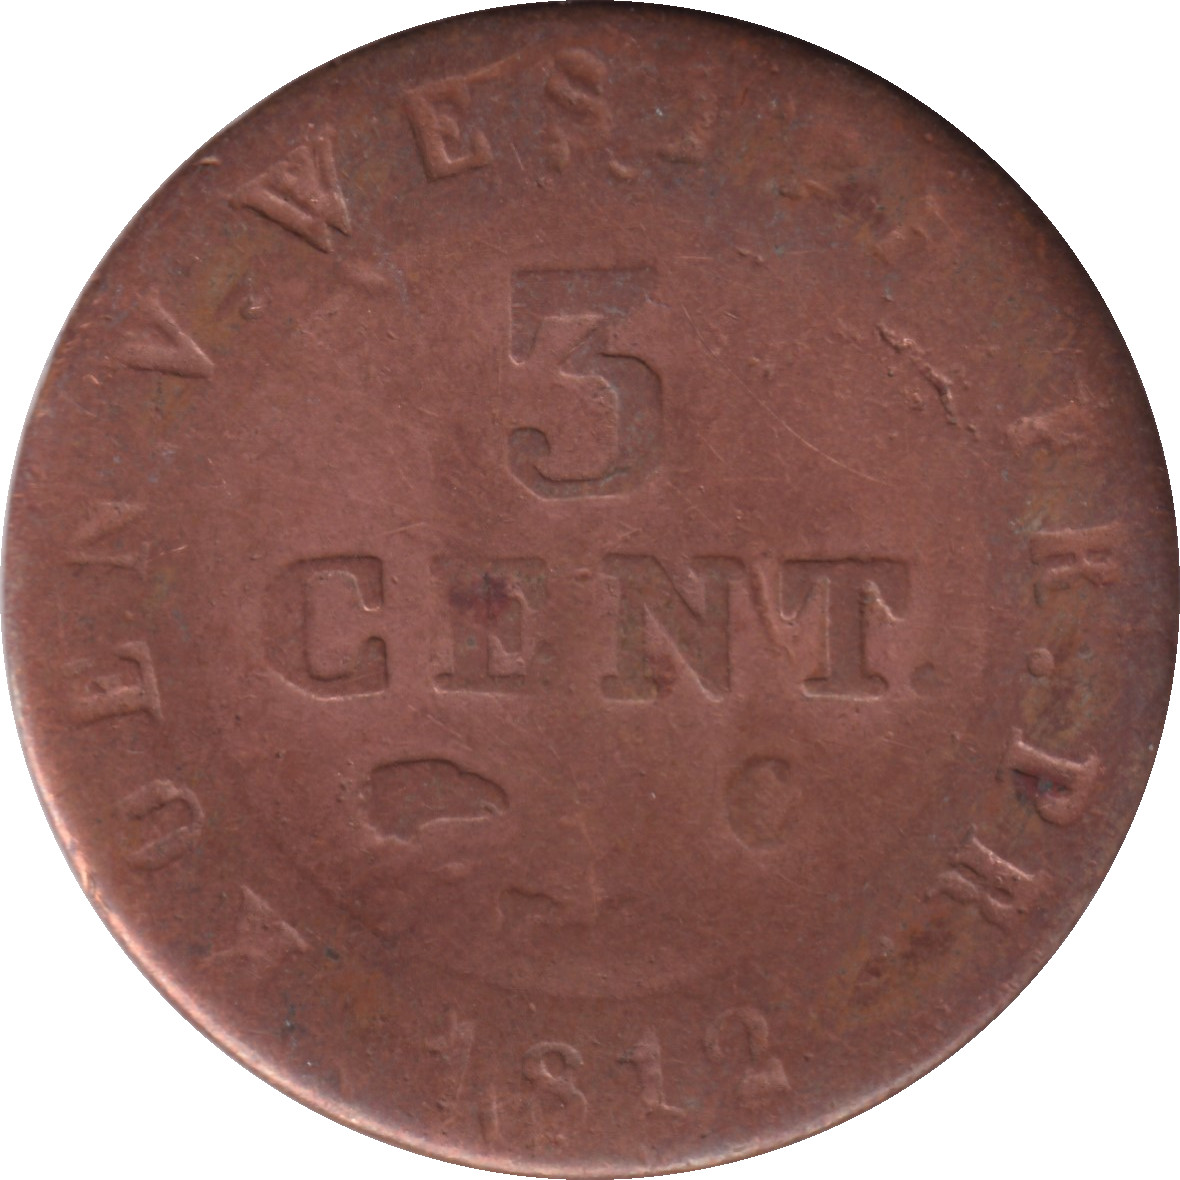 3 centimes - Joseph Napoléon